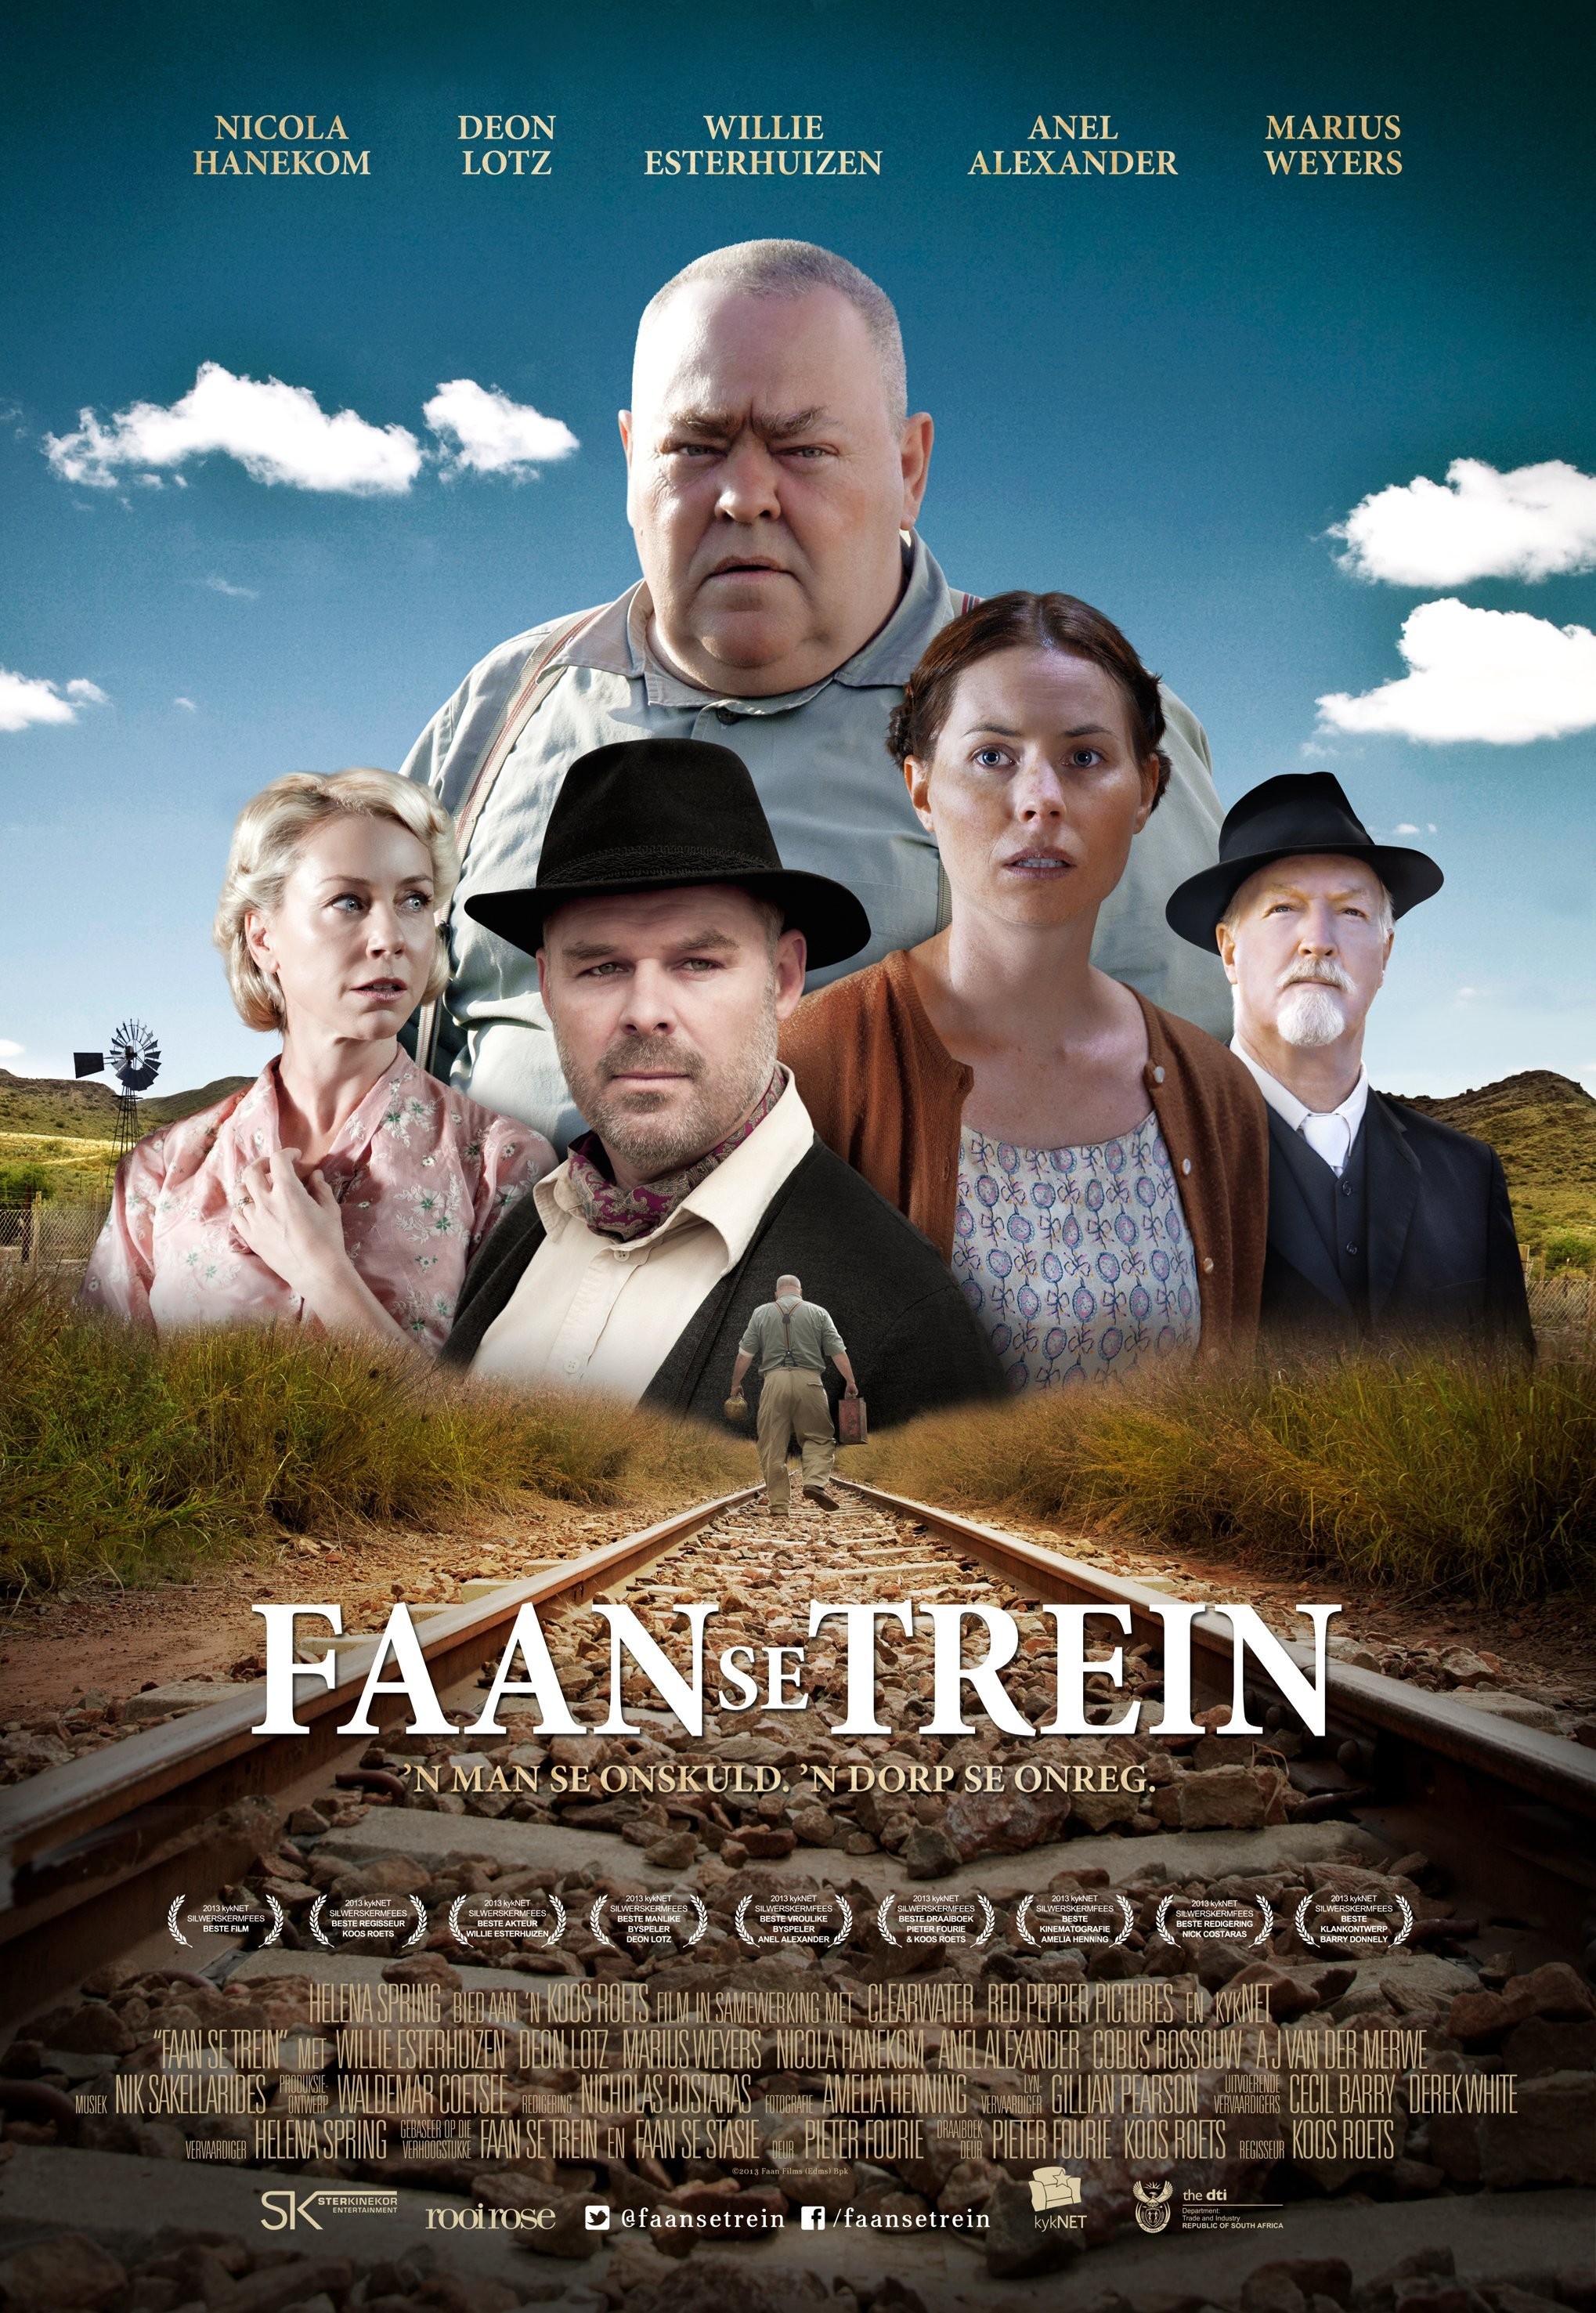 Mega Sized Movie Poster Image for Faan se trein 